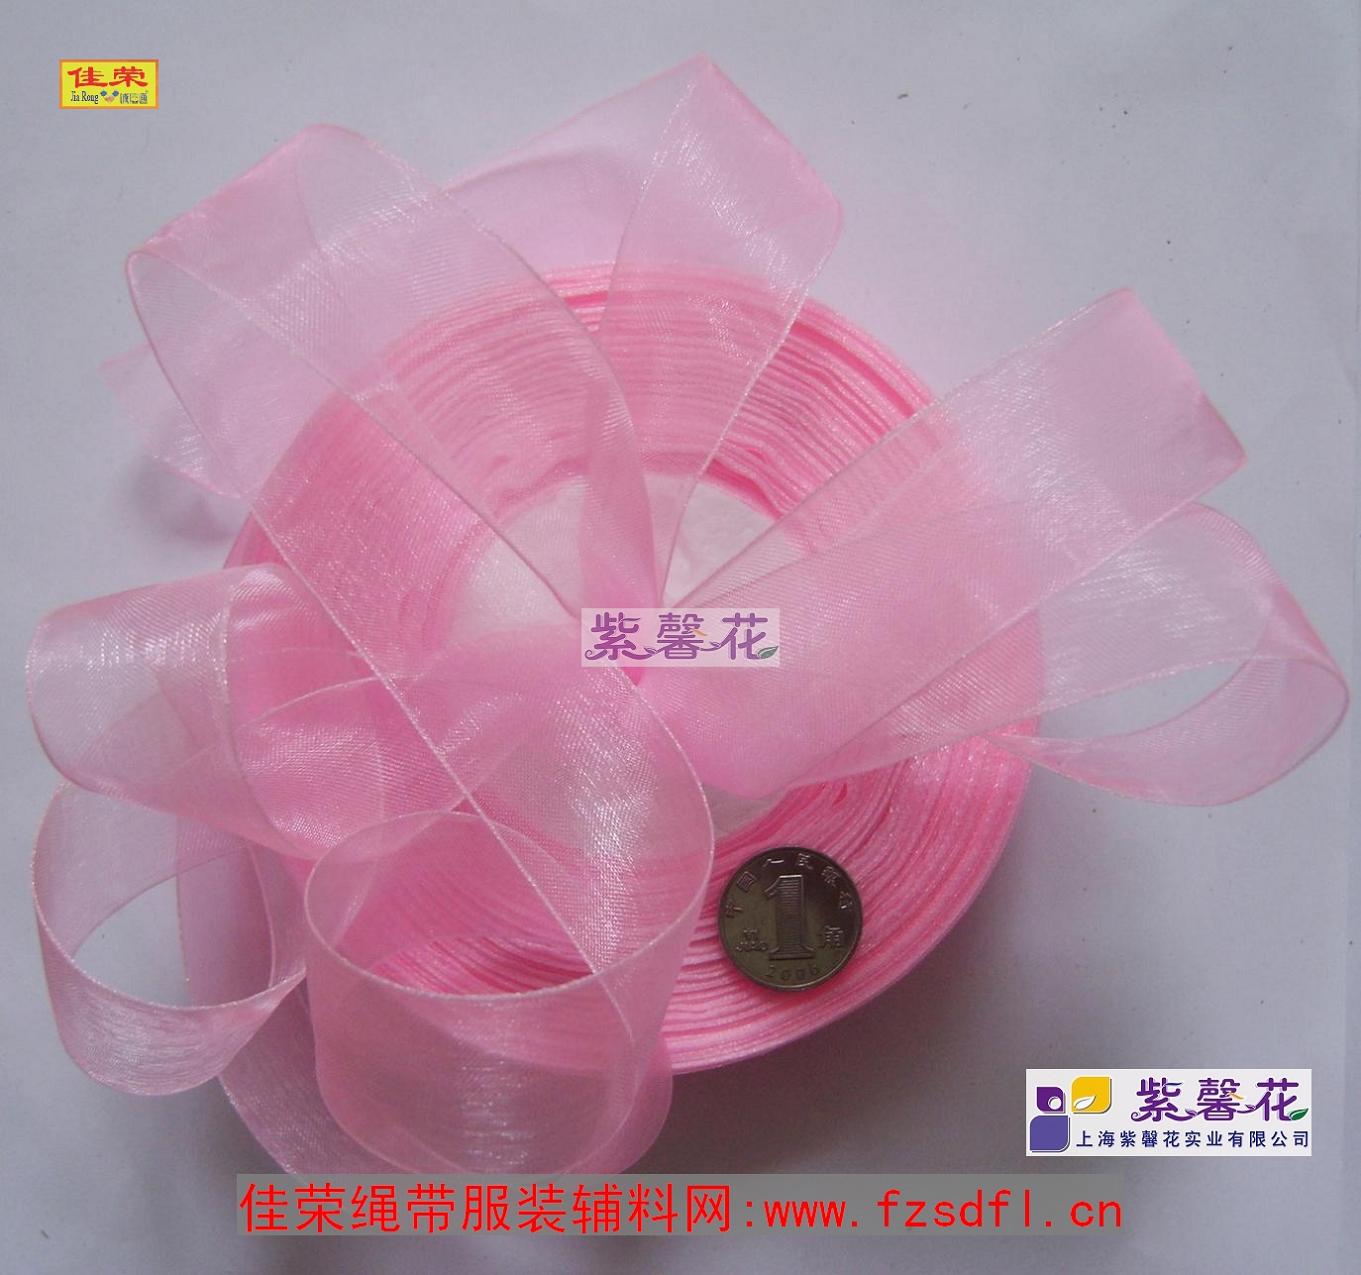 Веревка Huizhou Jiarong с вспомогательным материалом пурпурная цветочная одежда Вспомогательные материалы. Фиброзное шелковое края с Taobao Shop //www.fzsdfl.cn/